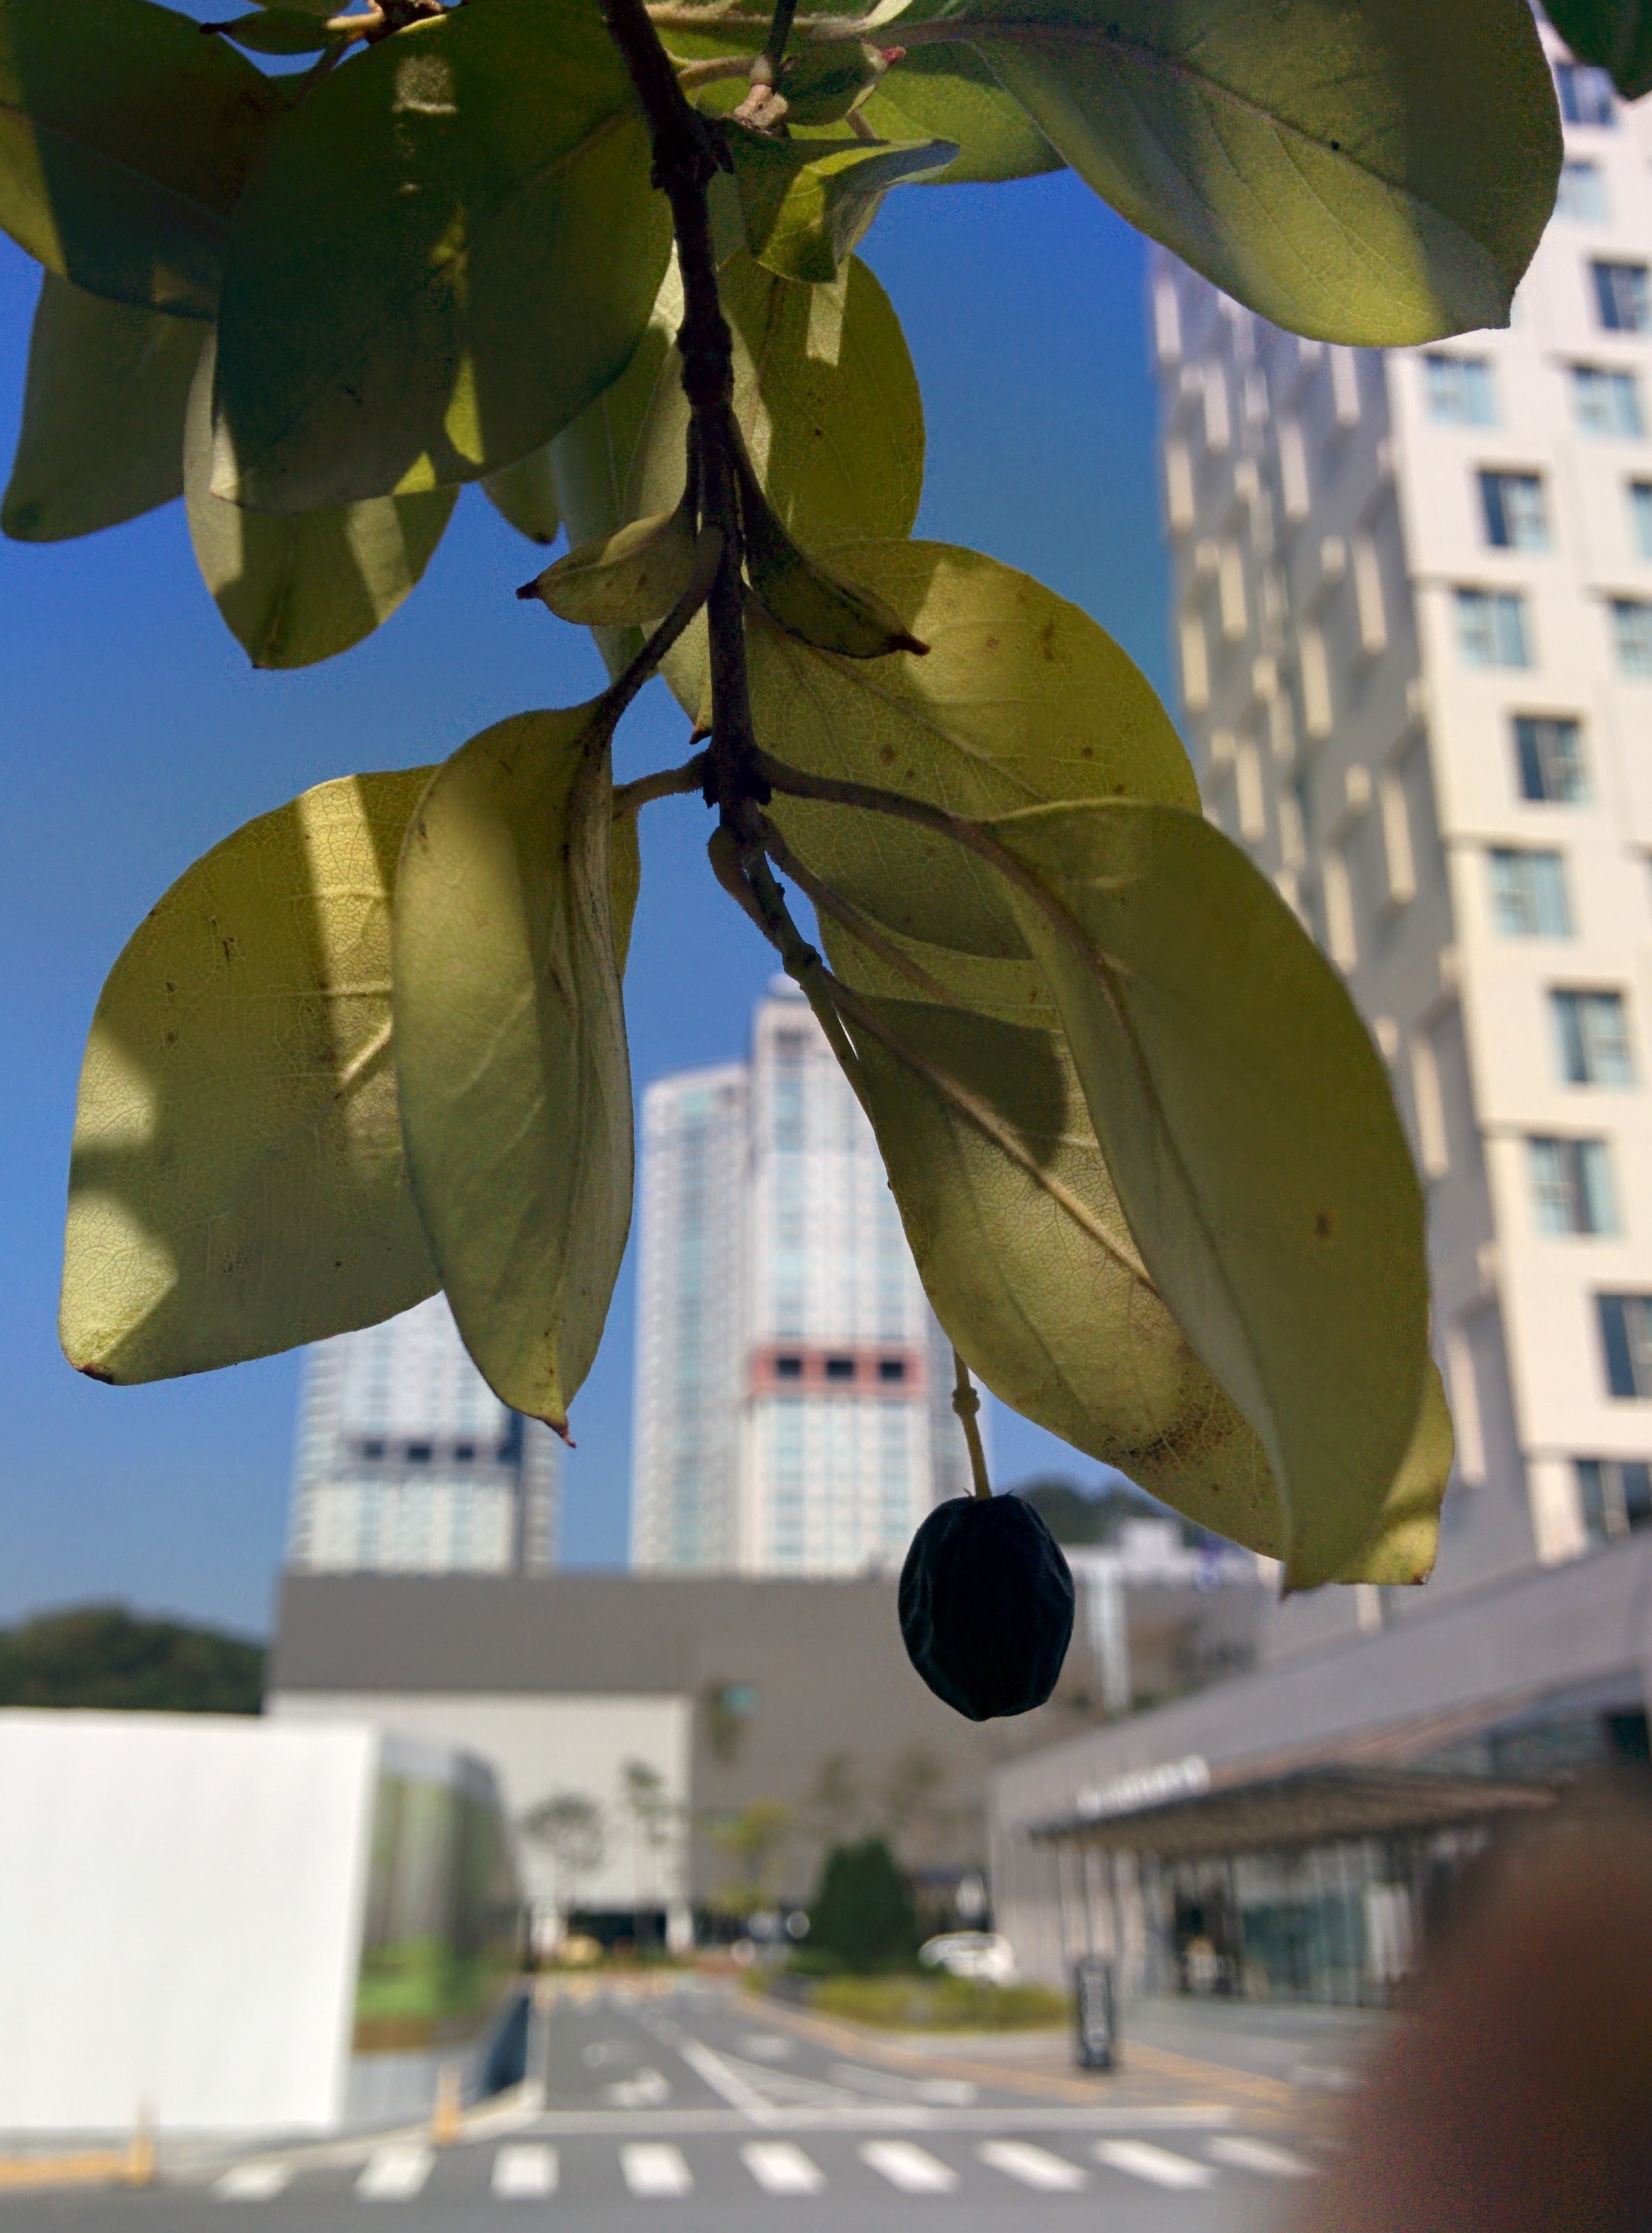 IMG_20151006_124628.jpg 블루베리를 닮은 검은색 열매가 열린 가로수, 이팝나무